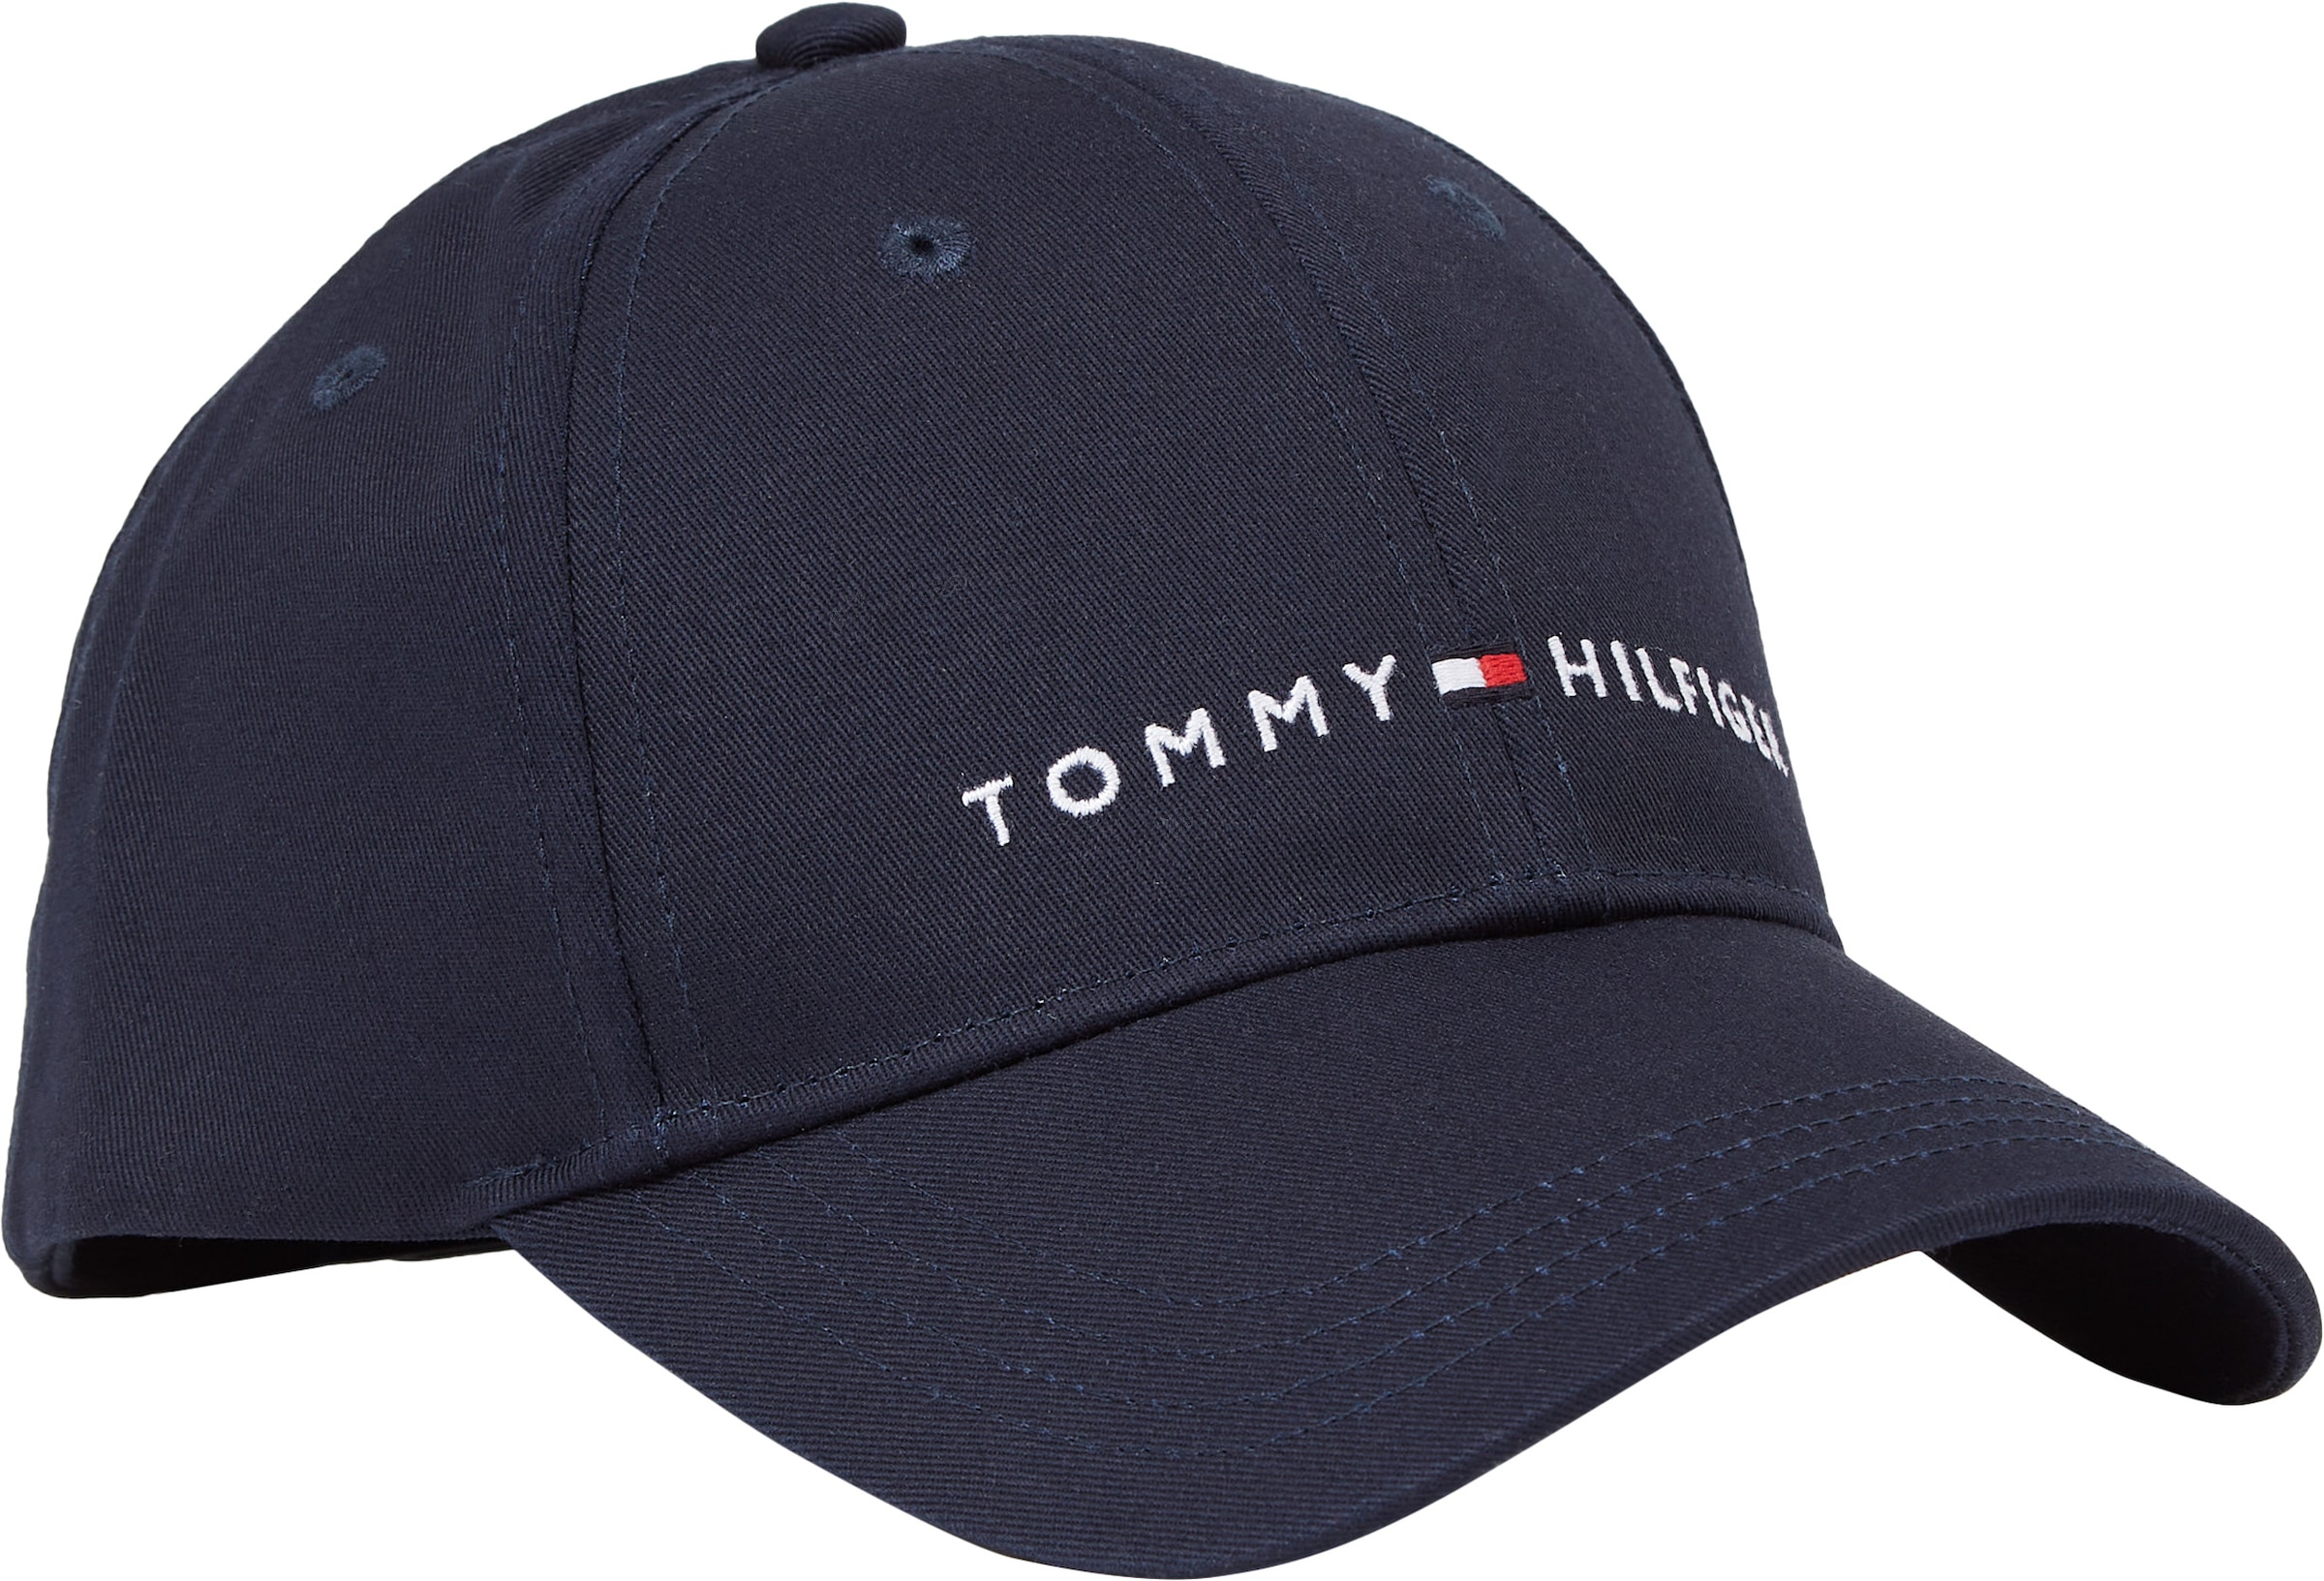 Découvrir Tommy Hilfiger Snapback Branding sur Cap Cap, Kinder Essential verstellbare mit